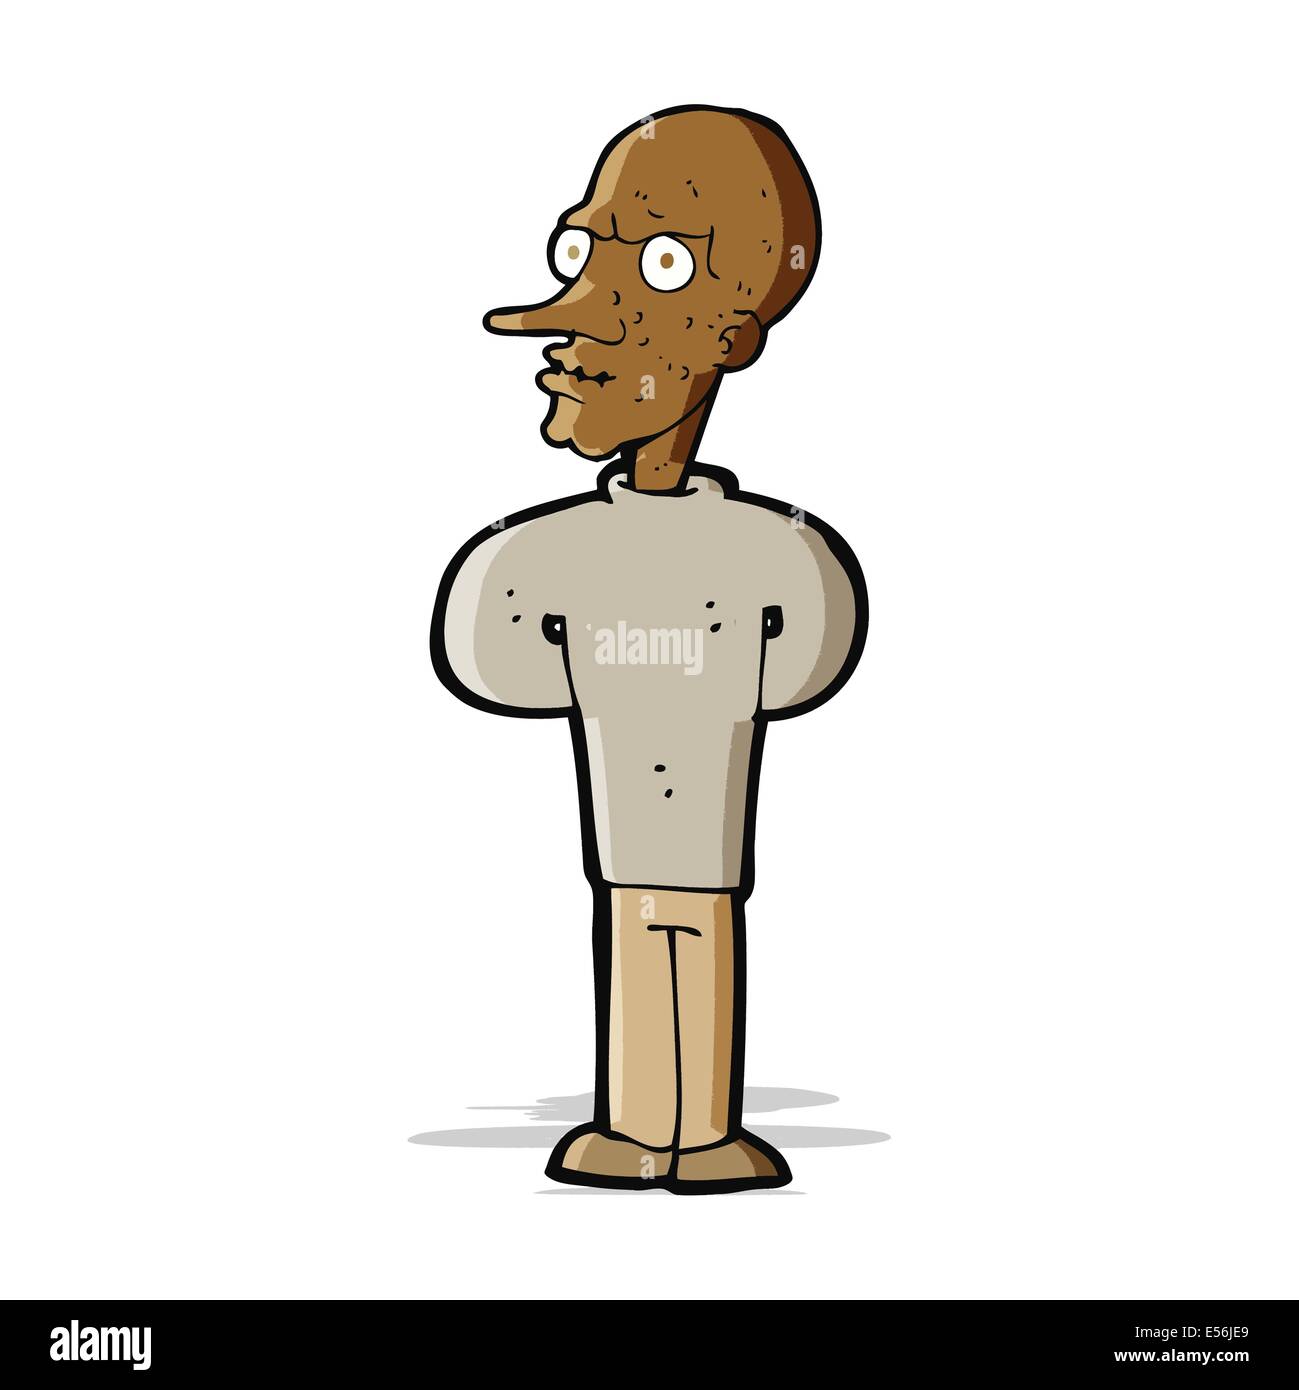 cartoon evil bald man Stock Vector Image & Art - Alamy